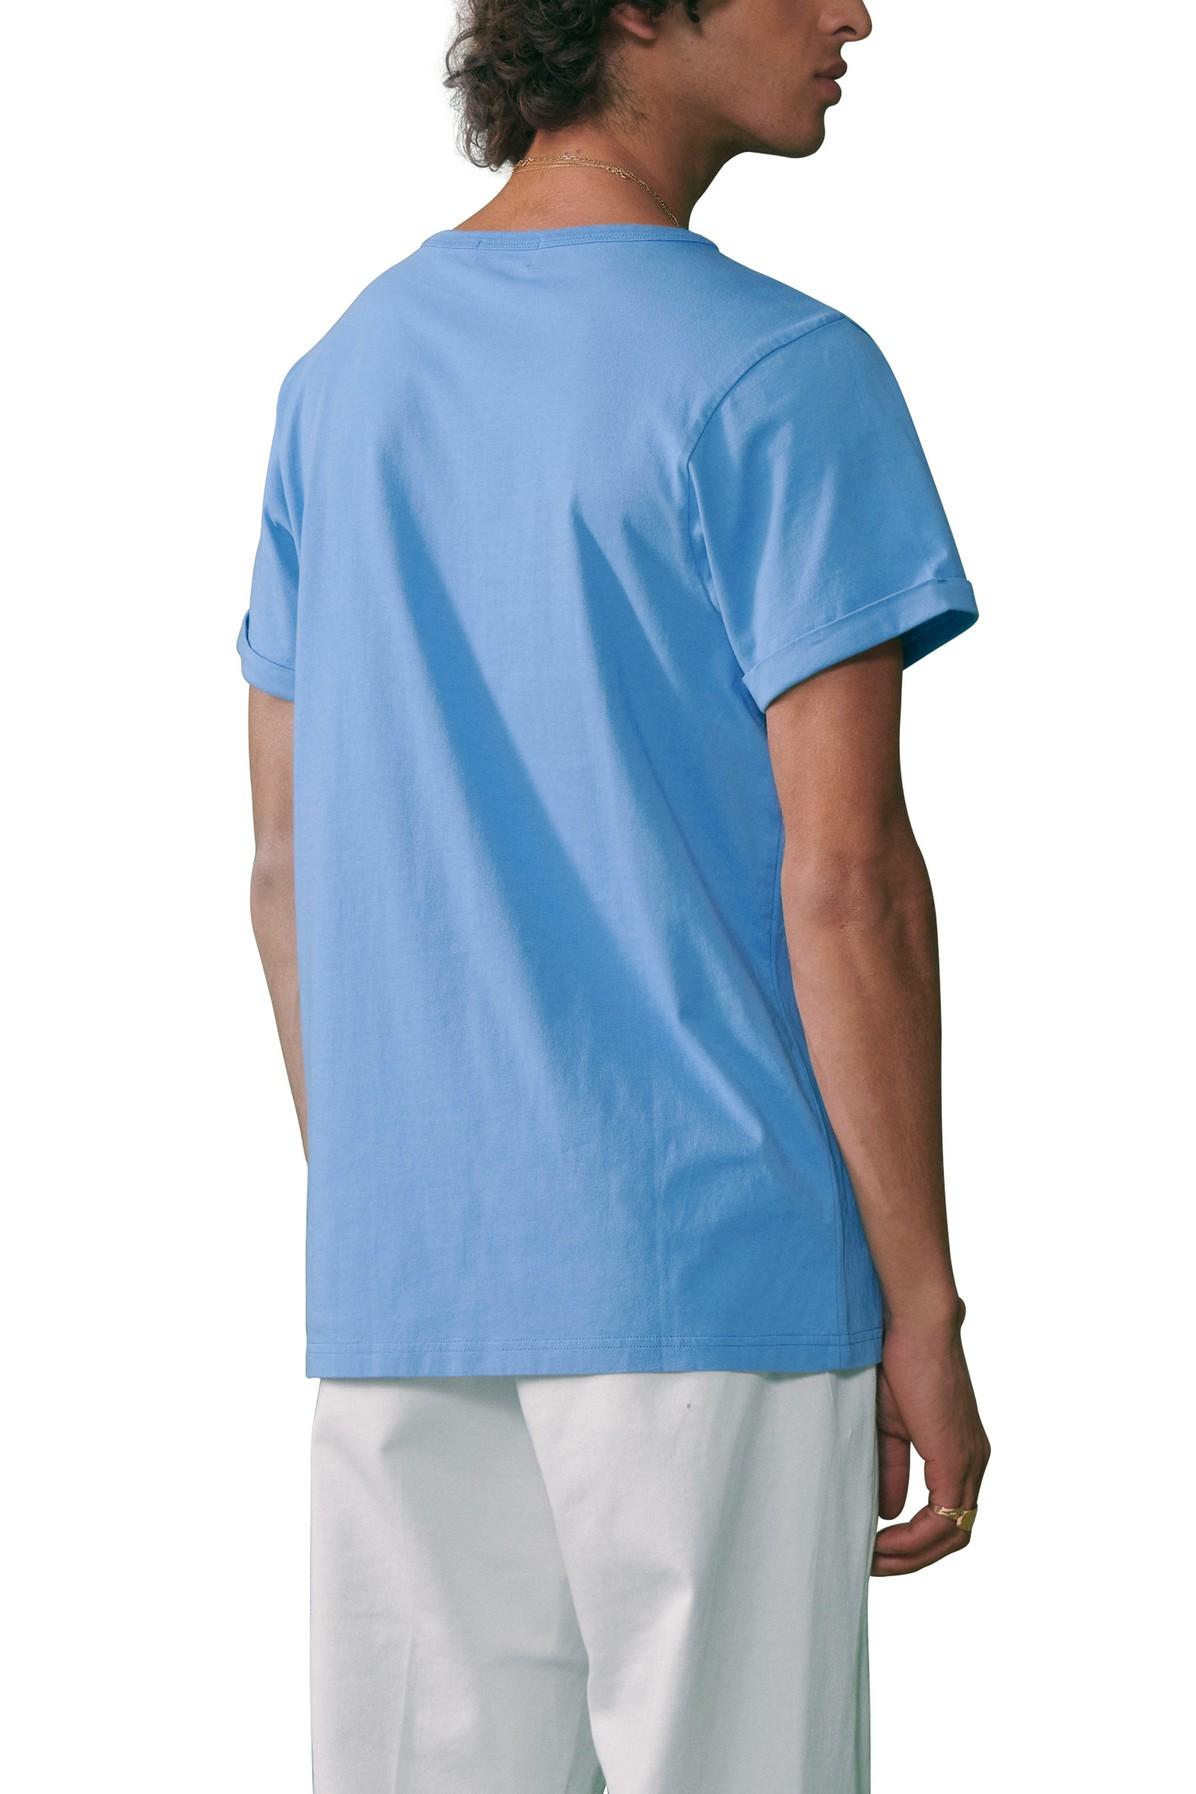 Maison Labiche "ocean Drive" Poitou T-shirt in Blue for Men | Lyst Canada